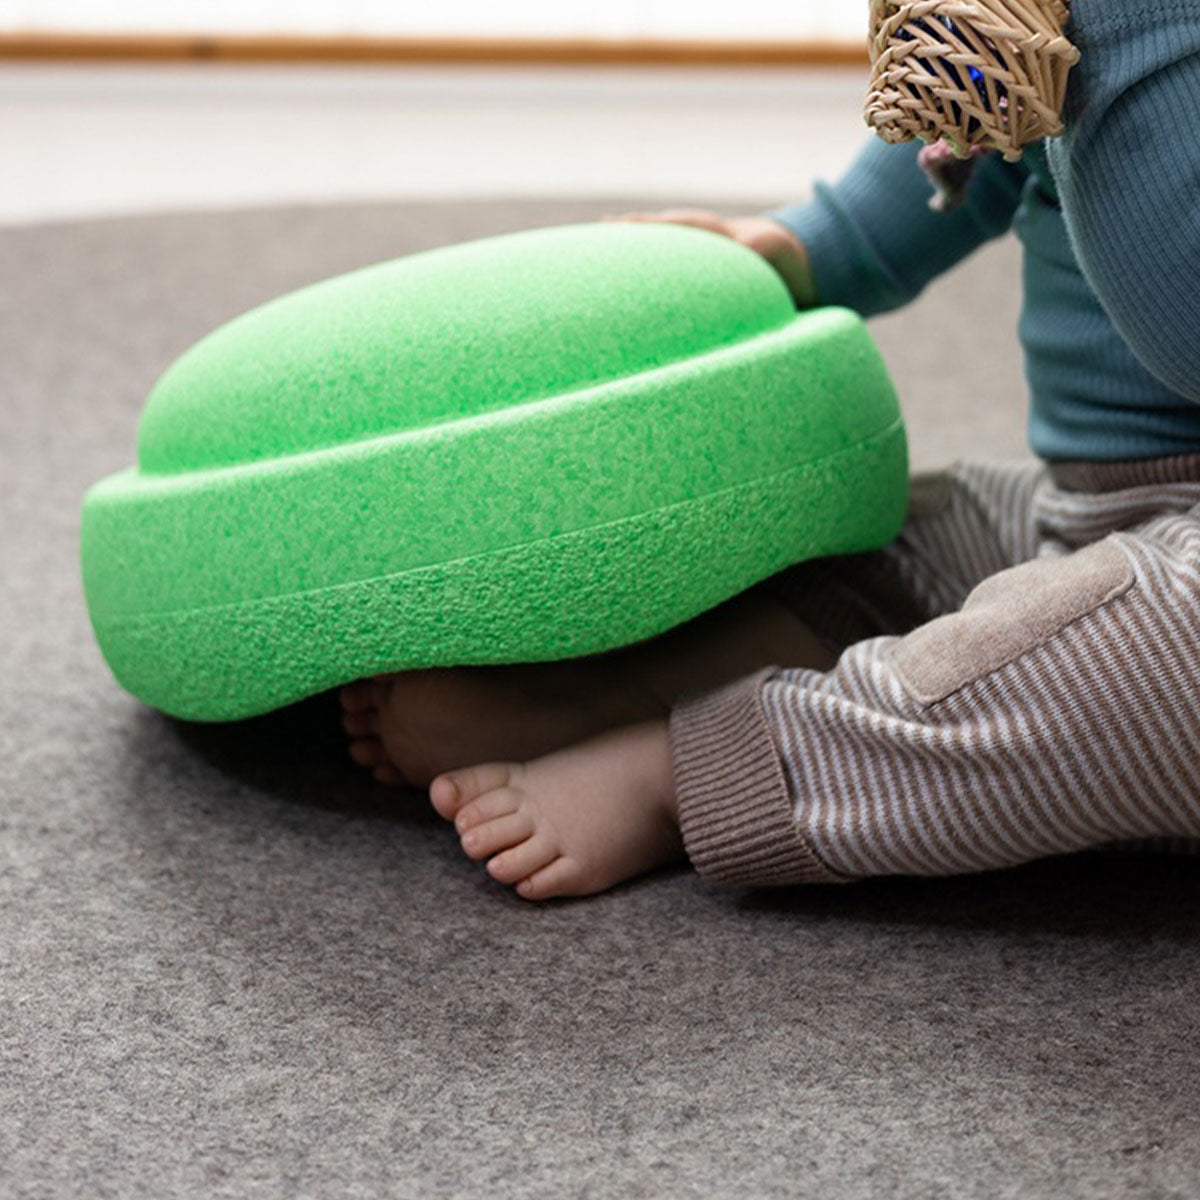 Stapelstein Original groen is het perfecte, duurzame, open einde speelgoed. Gebruik de steen om te balanceren, te bouwen of als krukje of opstapje; de mogelijkheden zijn eindeloos. De stapelstenen van Stapelstein stimuleren de creativiteit omdat kinderen zelf invulling aan het speelgoed kunnen geven. VanZus